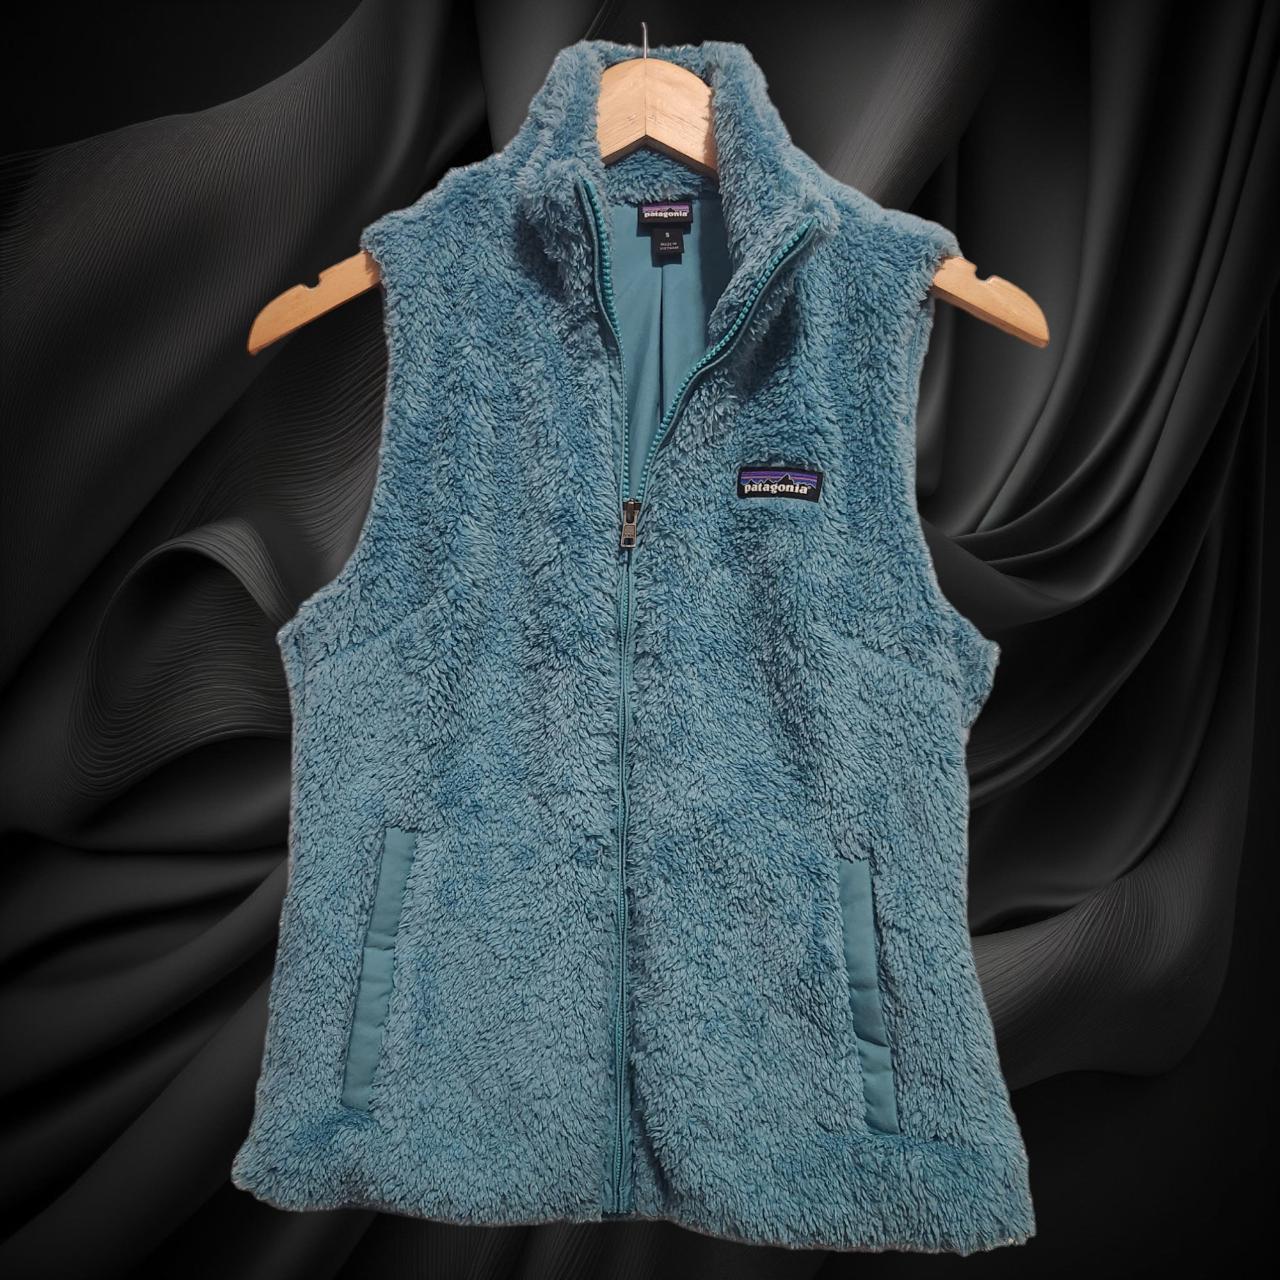 Patagonia Women's Los Gatos Fleece Vest Full Zip - Depop